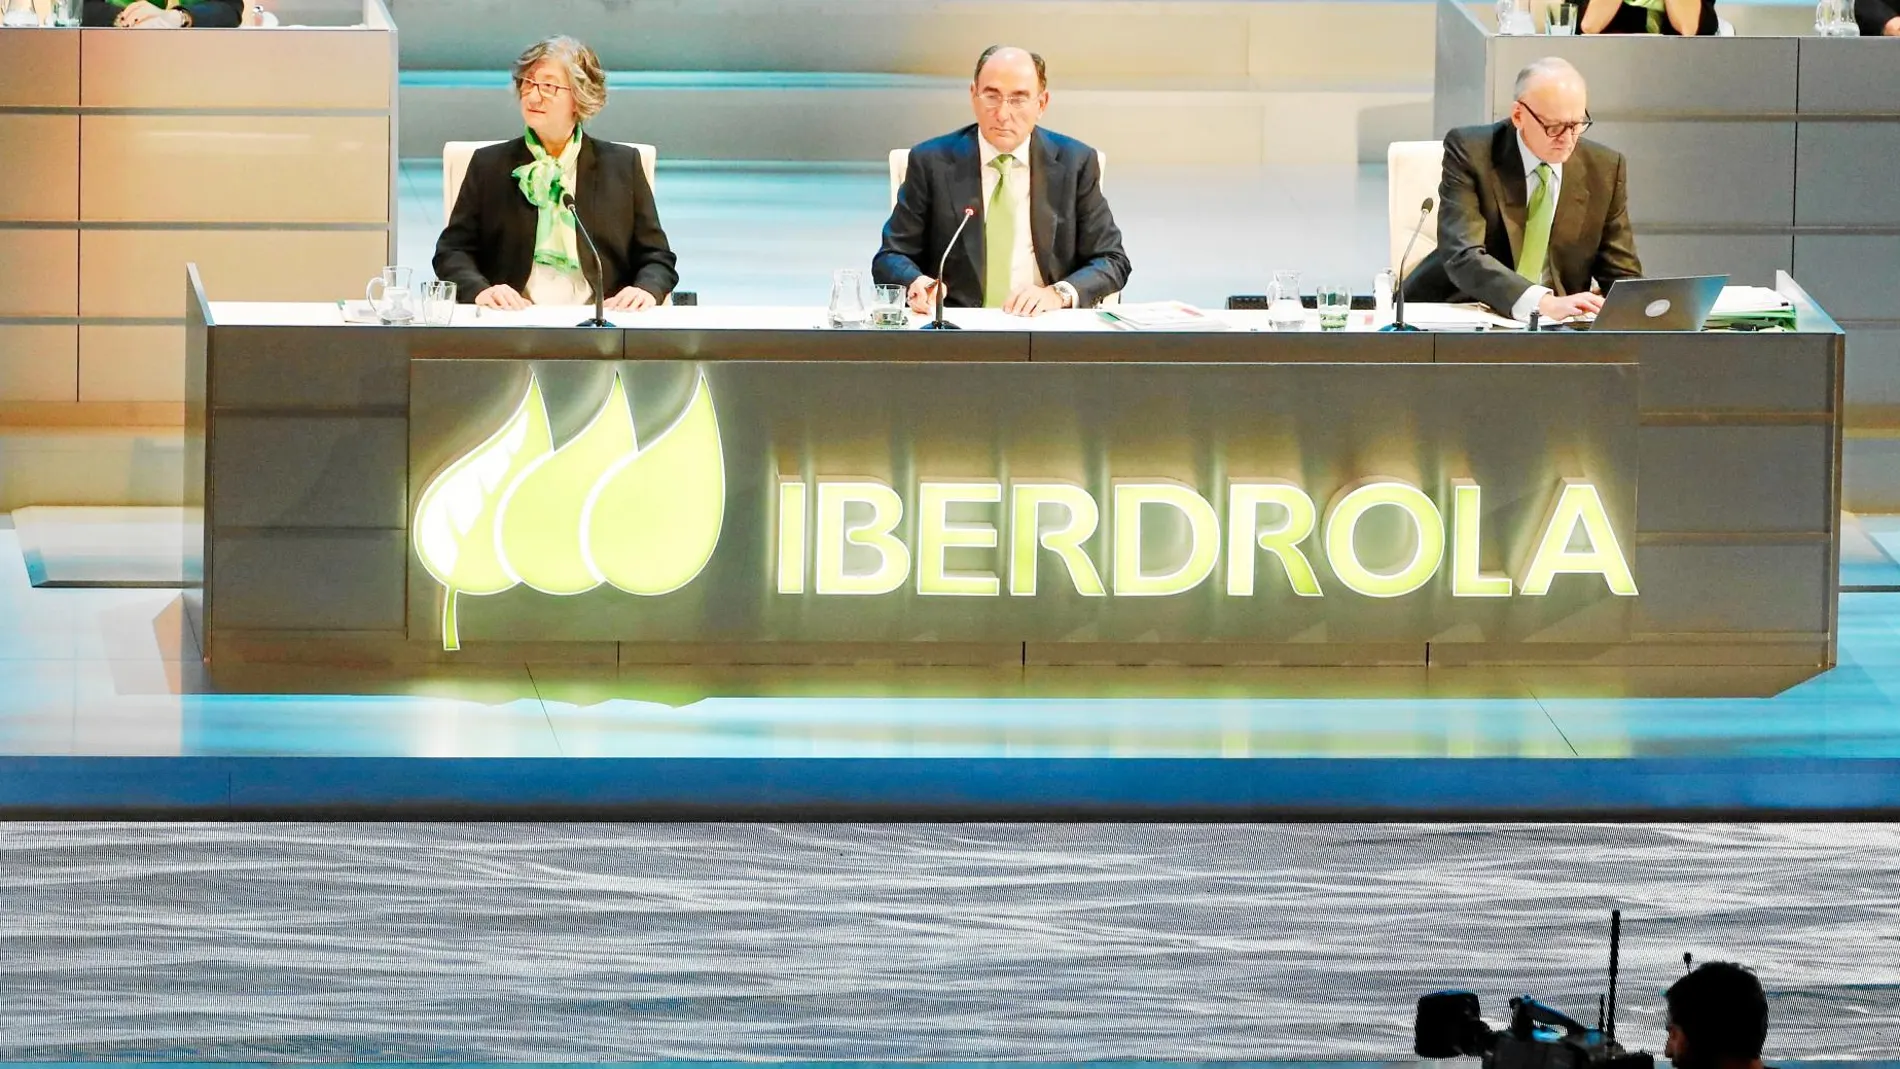 El presidente de Iberdrola, Ignacio Galán, se incorporó a la compañía energética en 2001